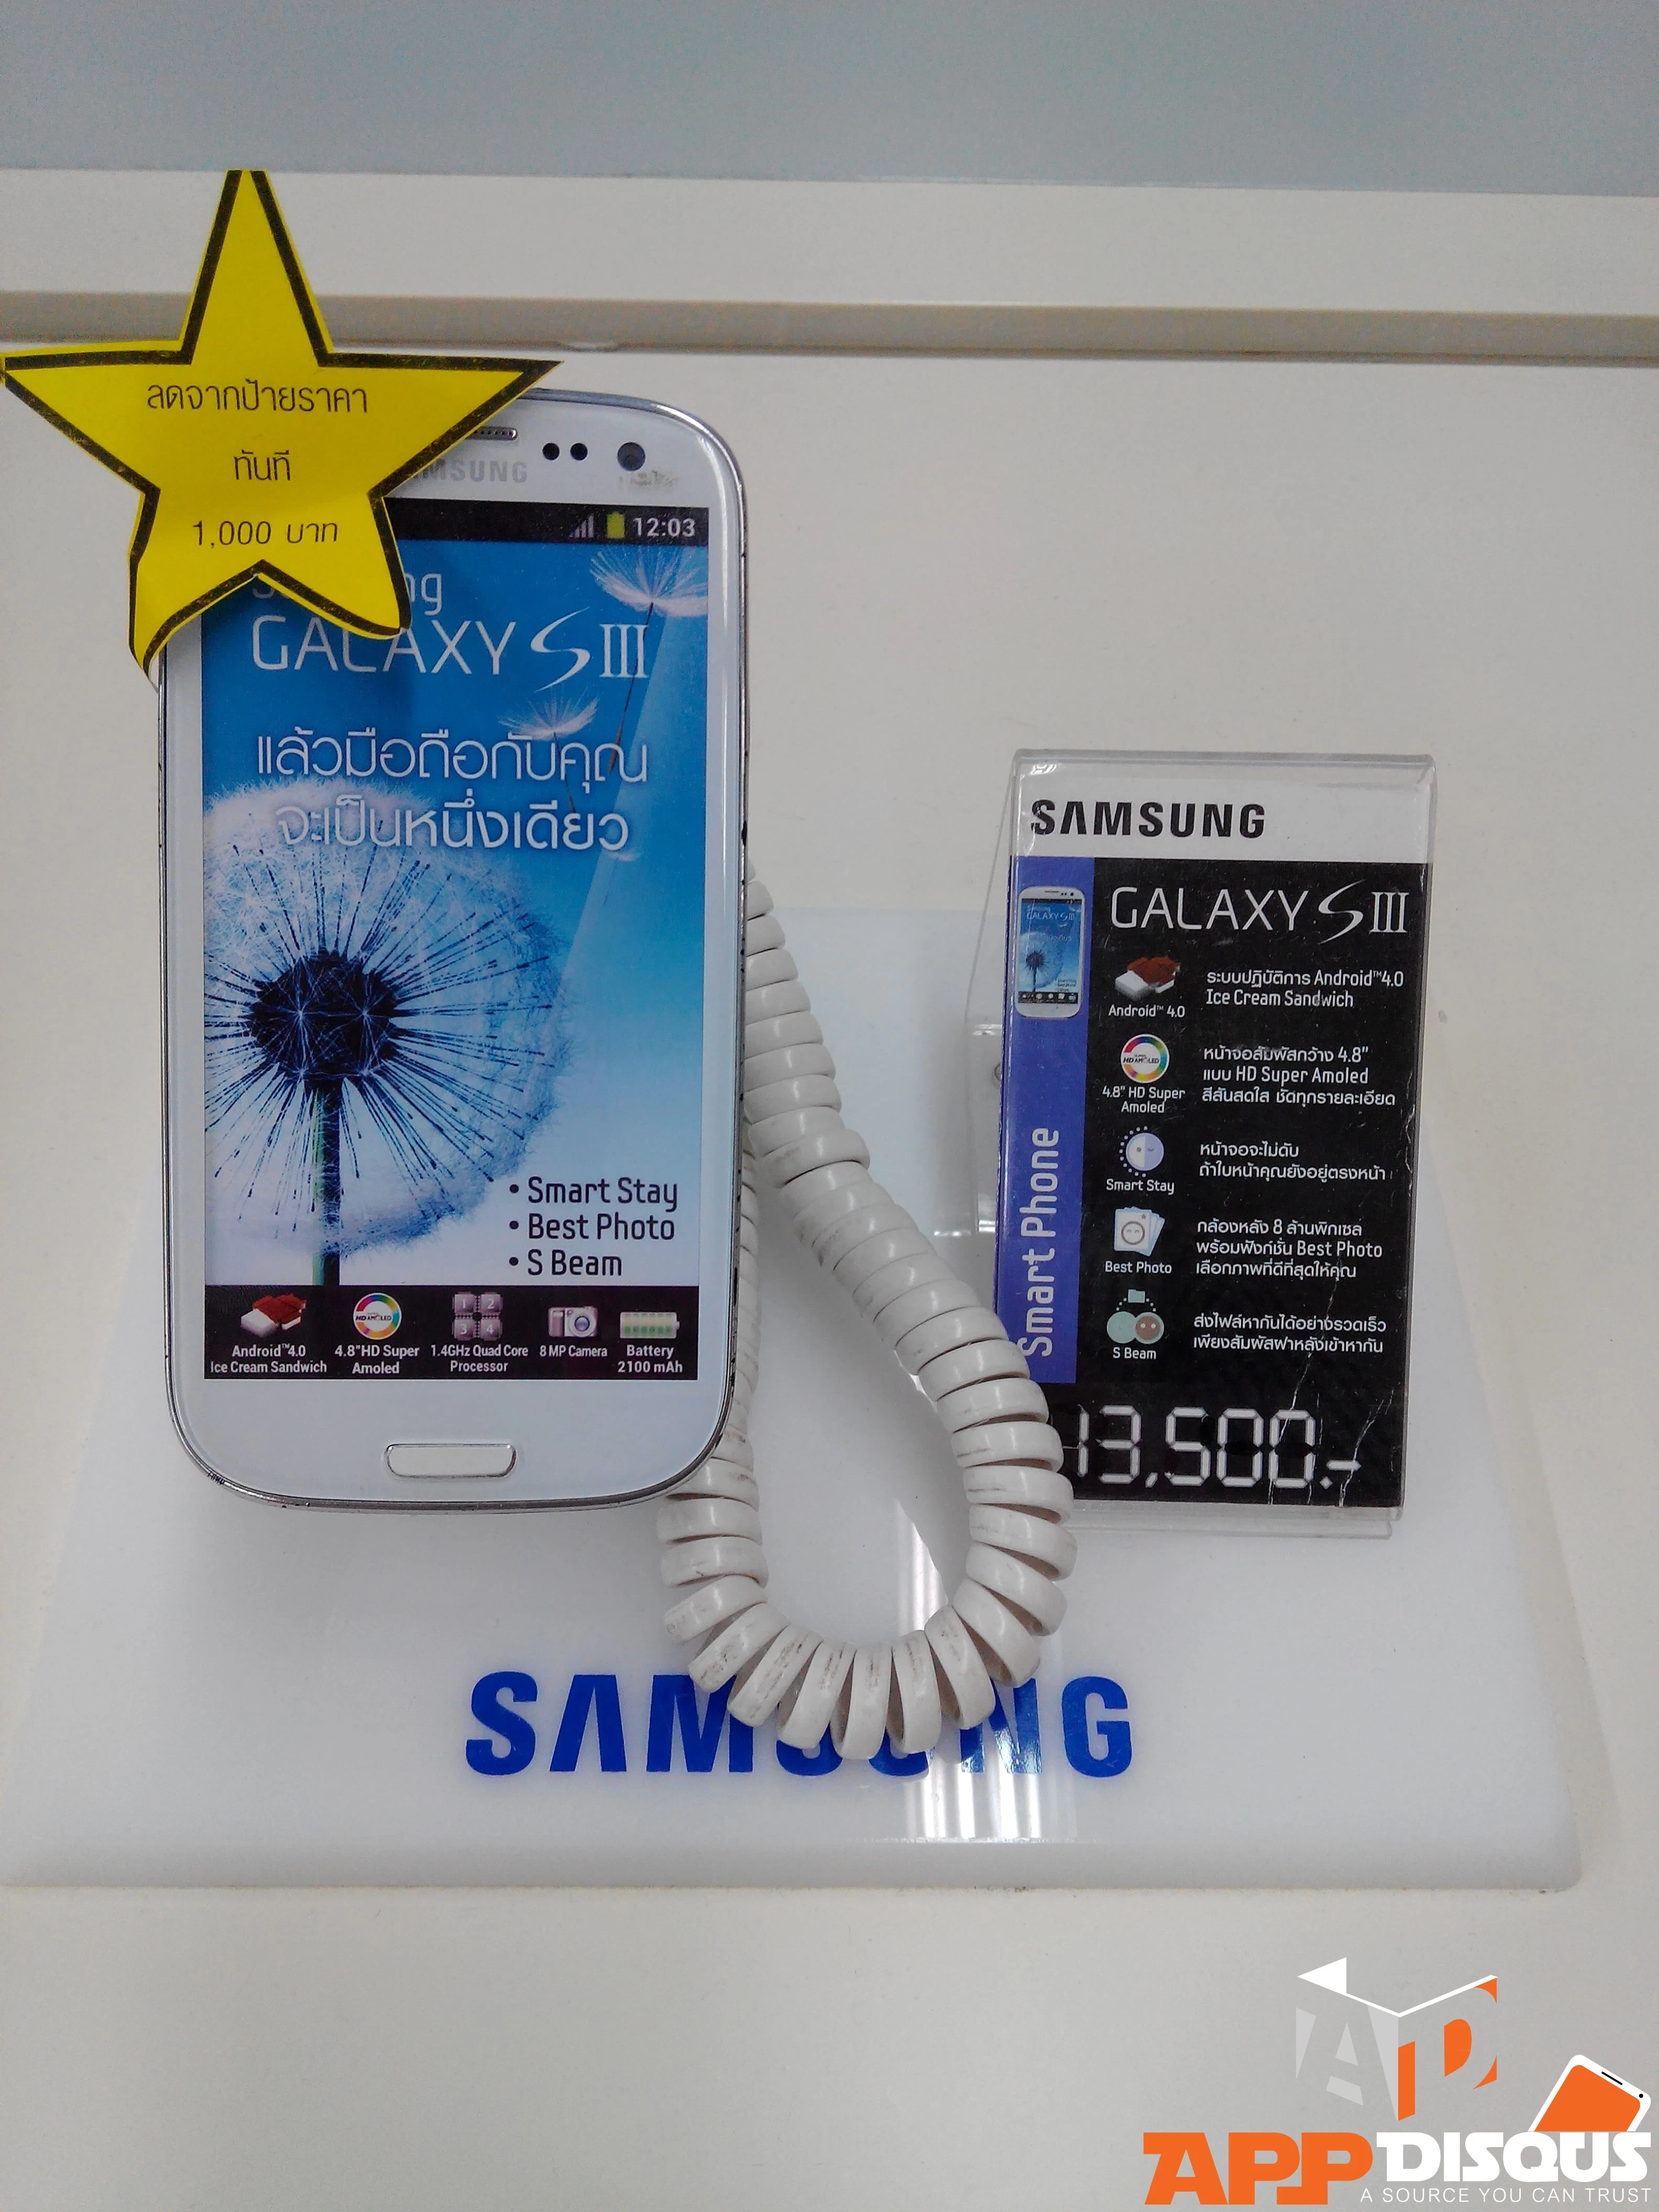 IMG 20140302 184144 | Samsung Galaxy S3 | [แอดมินบุกตลาดมือถือ]Samsung Galaxy S3 กับ Galaxy Note 2 ลดราคาแล้วจ้าที่ Big C Extra ลาดพร้าว